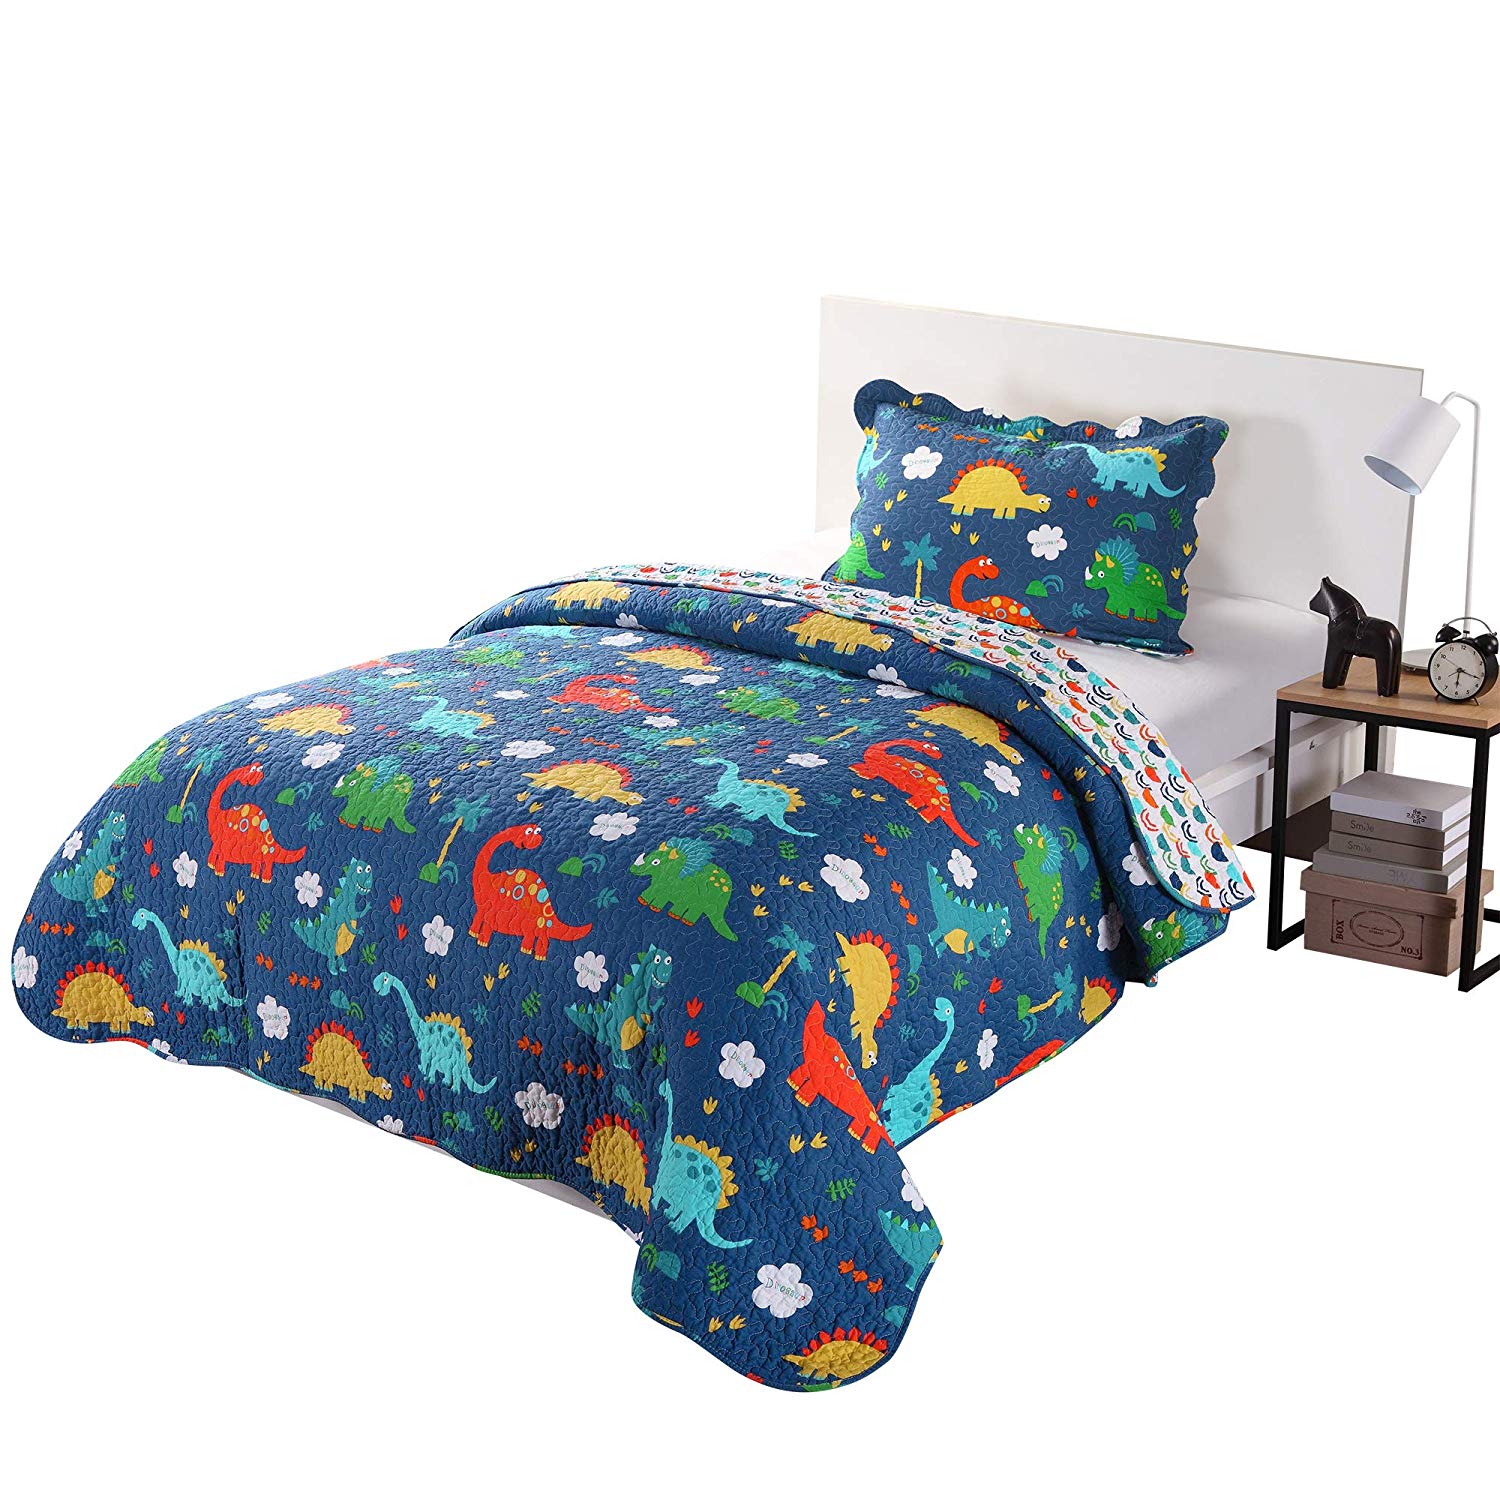 100% Cotton 3 Piece Kids Quilt Bedspread  Dinosaur, KL1804 Quilt